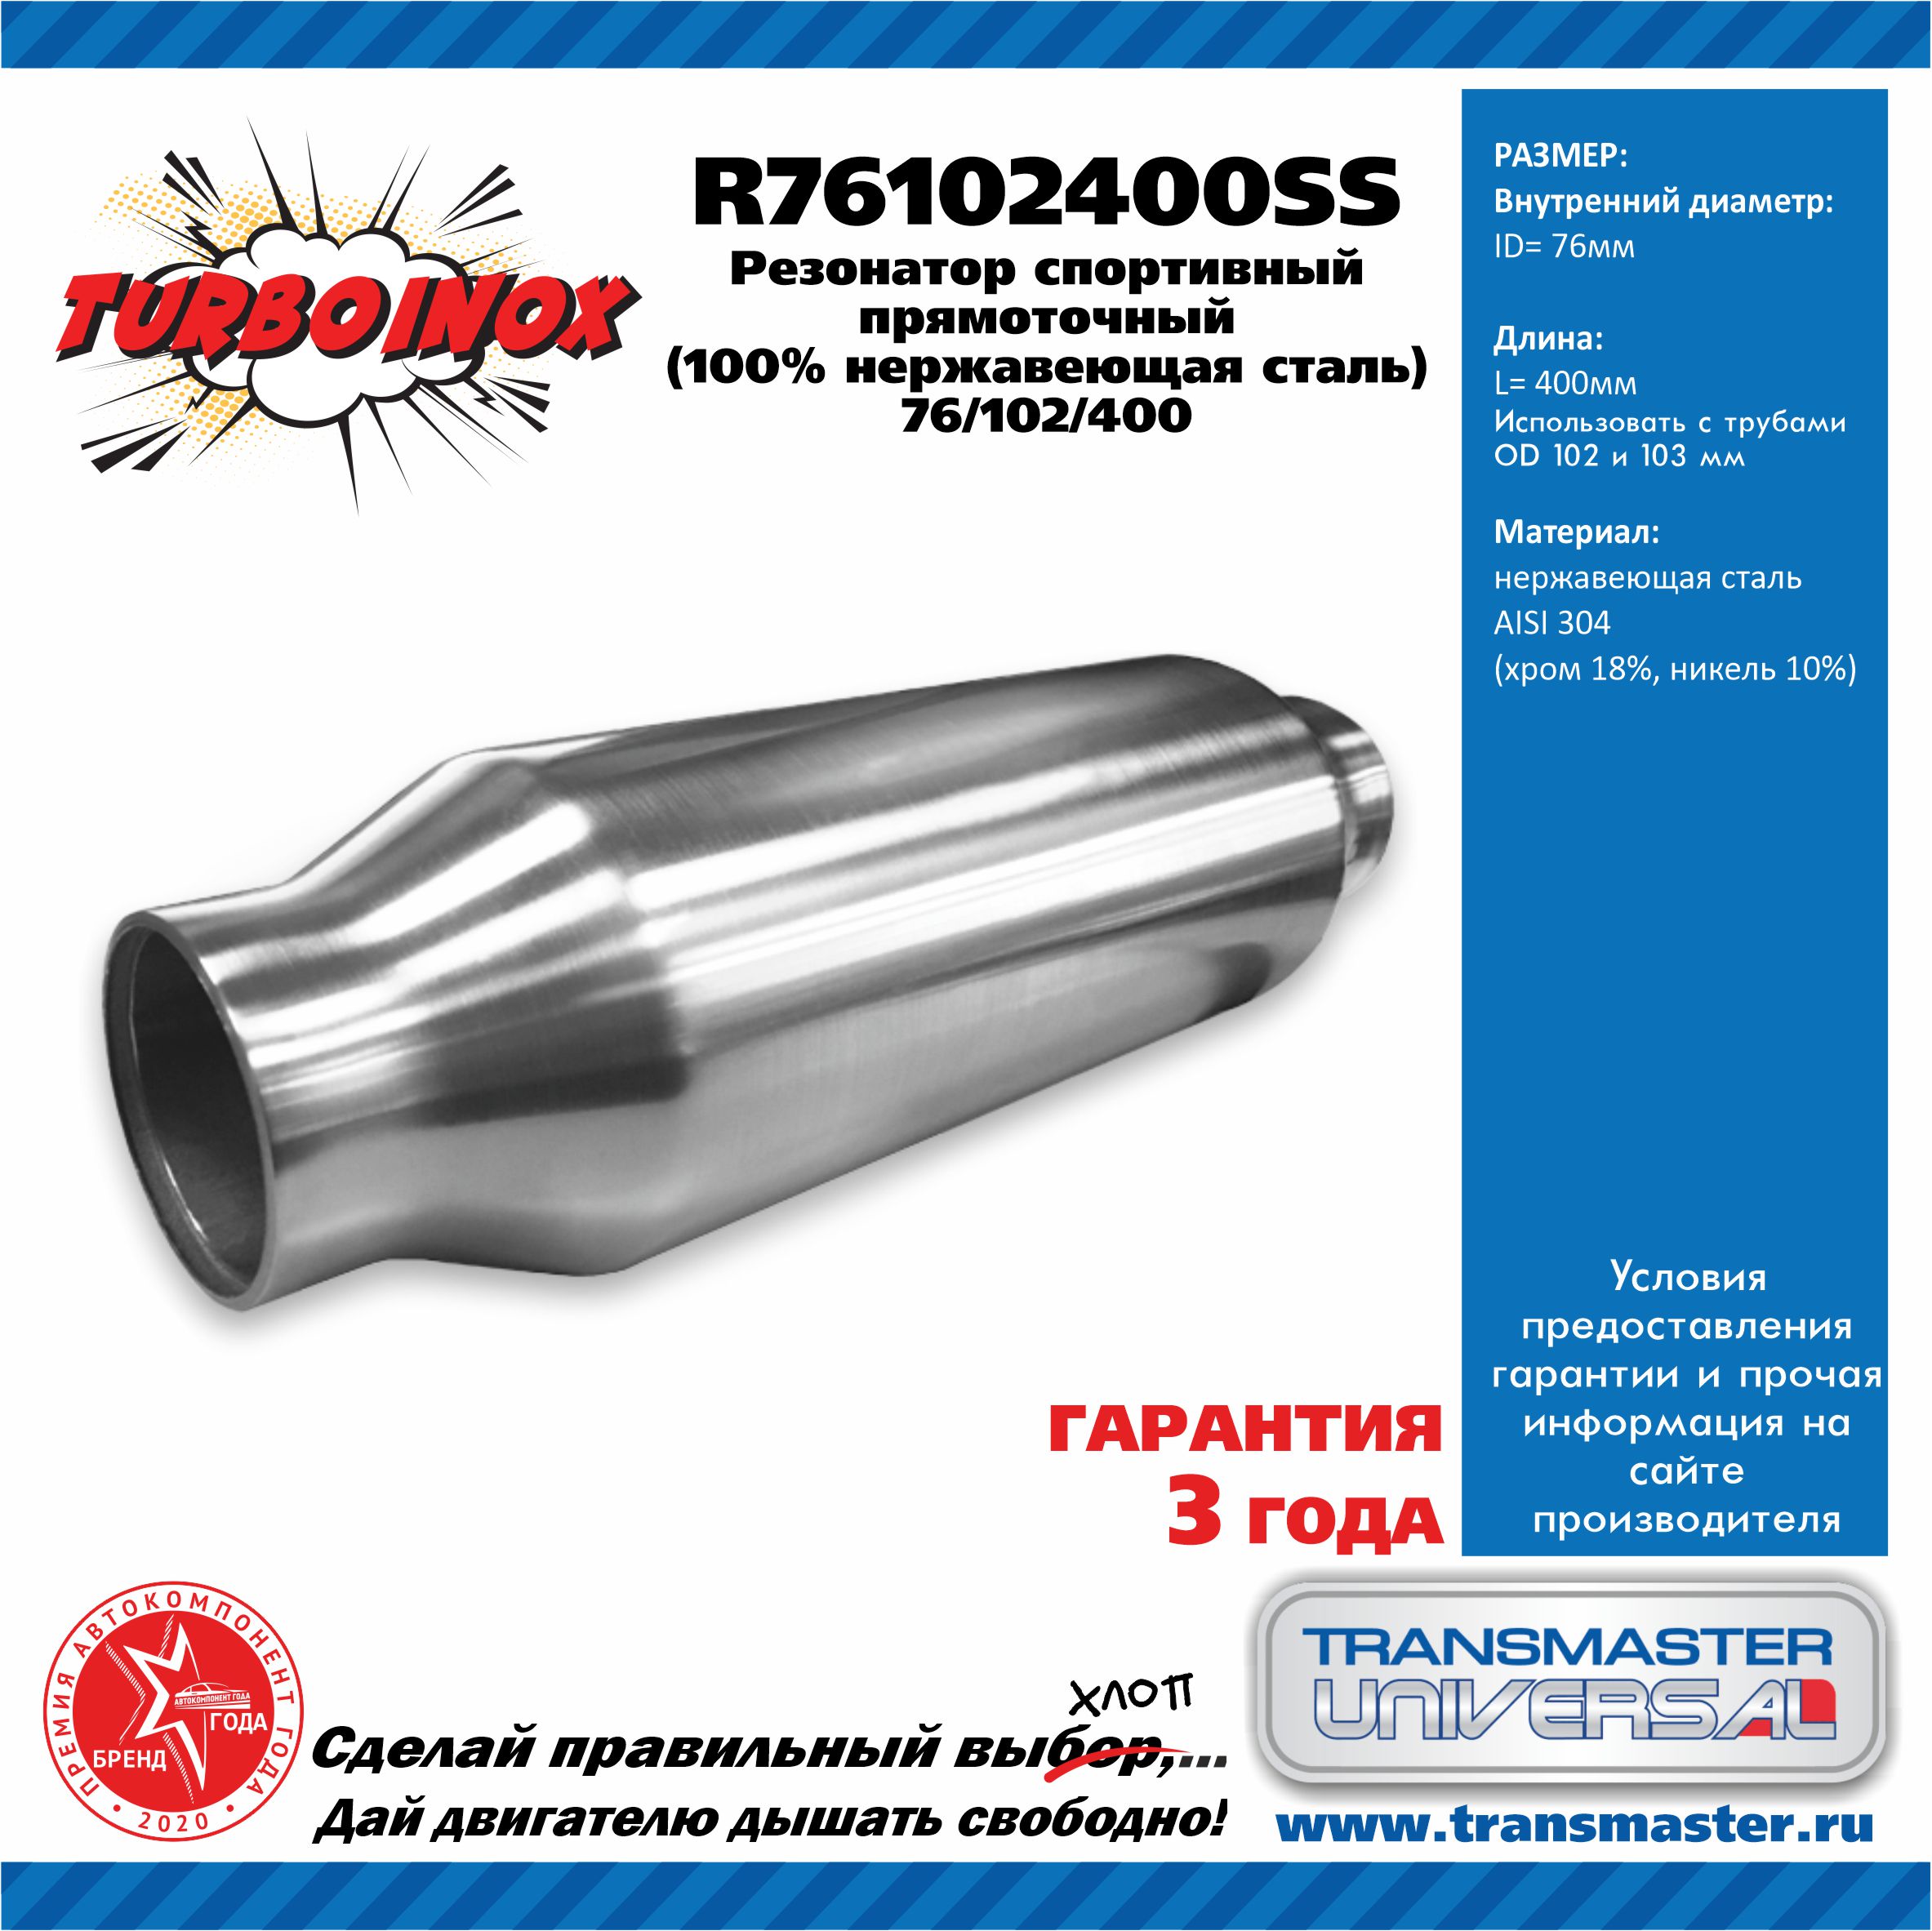 Резонатор спортивный прямоточный серия turboinox (100% нержавеющая сталь) - TRANSMASTER UNIVERSAL R76102400SS